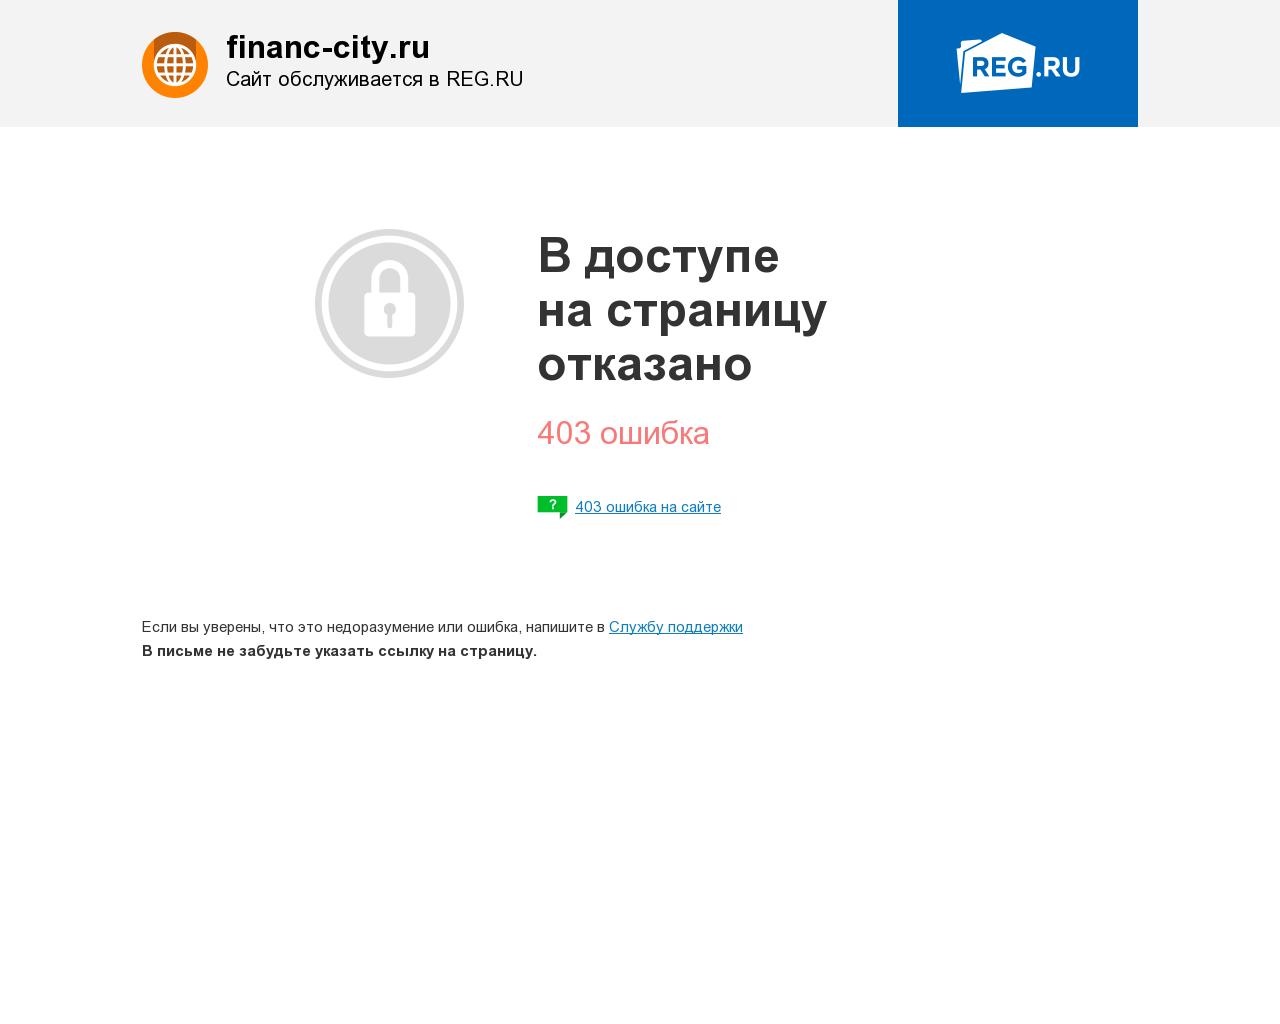 Изображение сайта financ-city.ru в разрешении 1280x1024